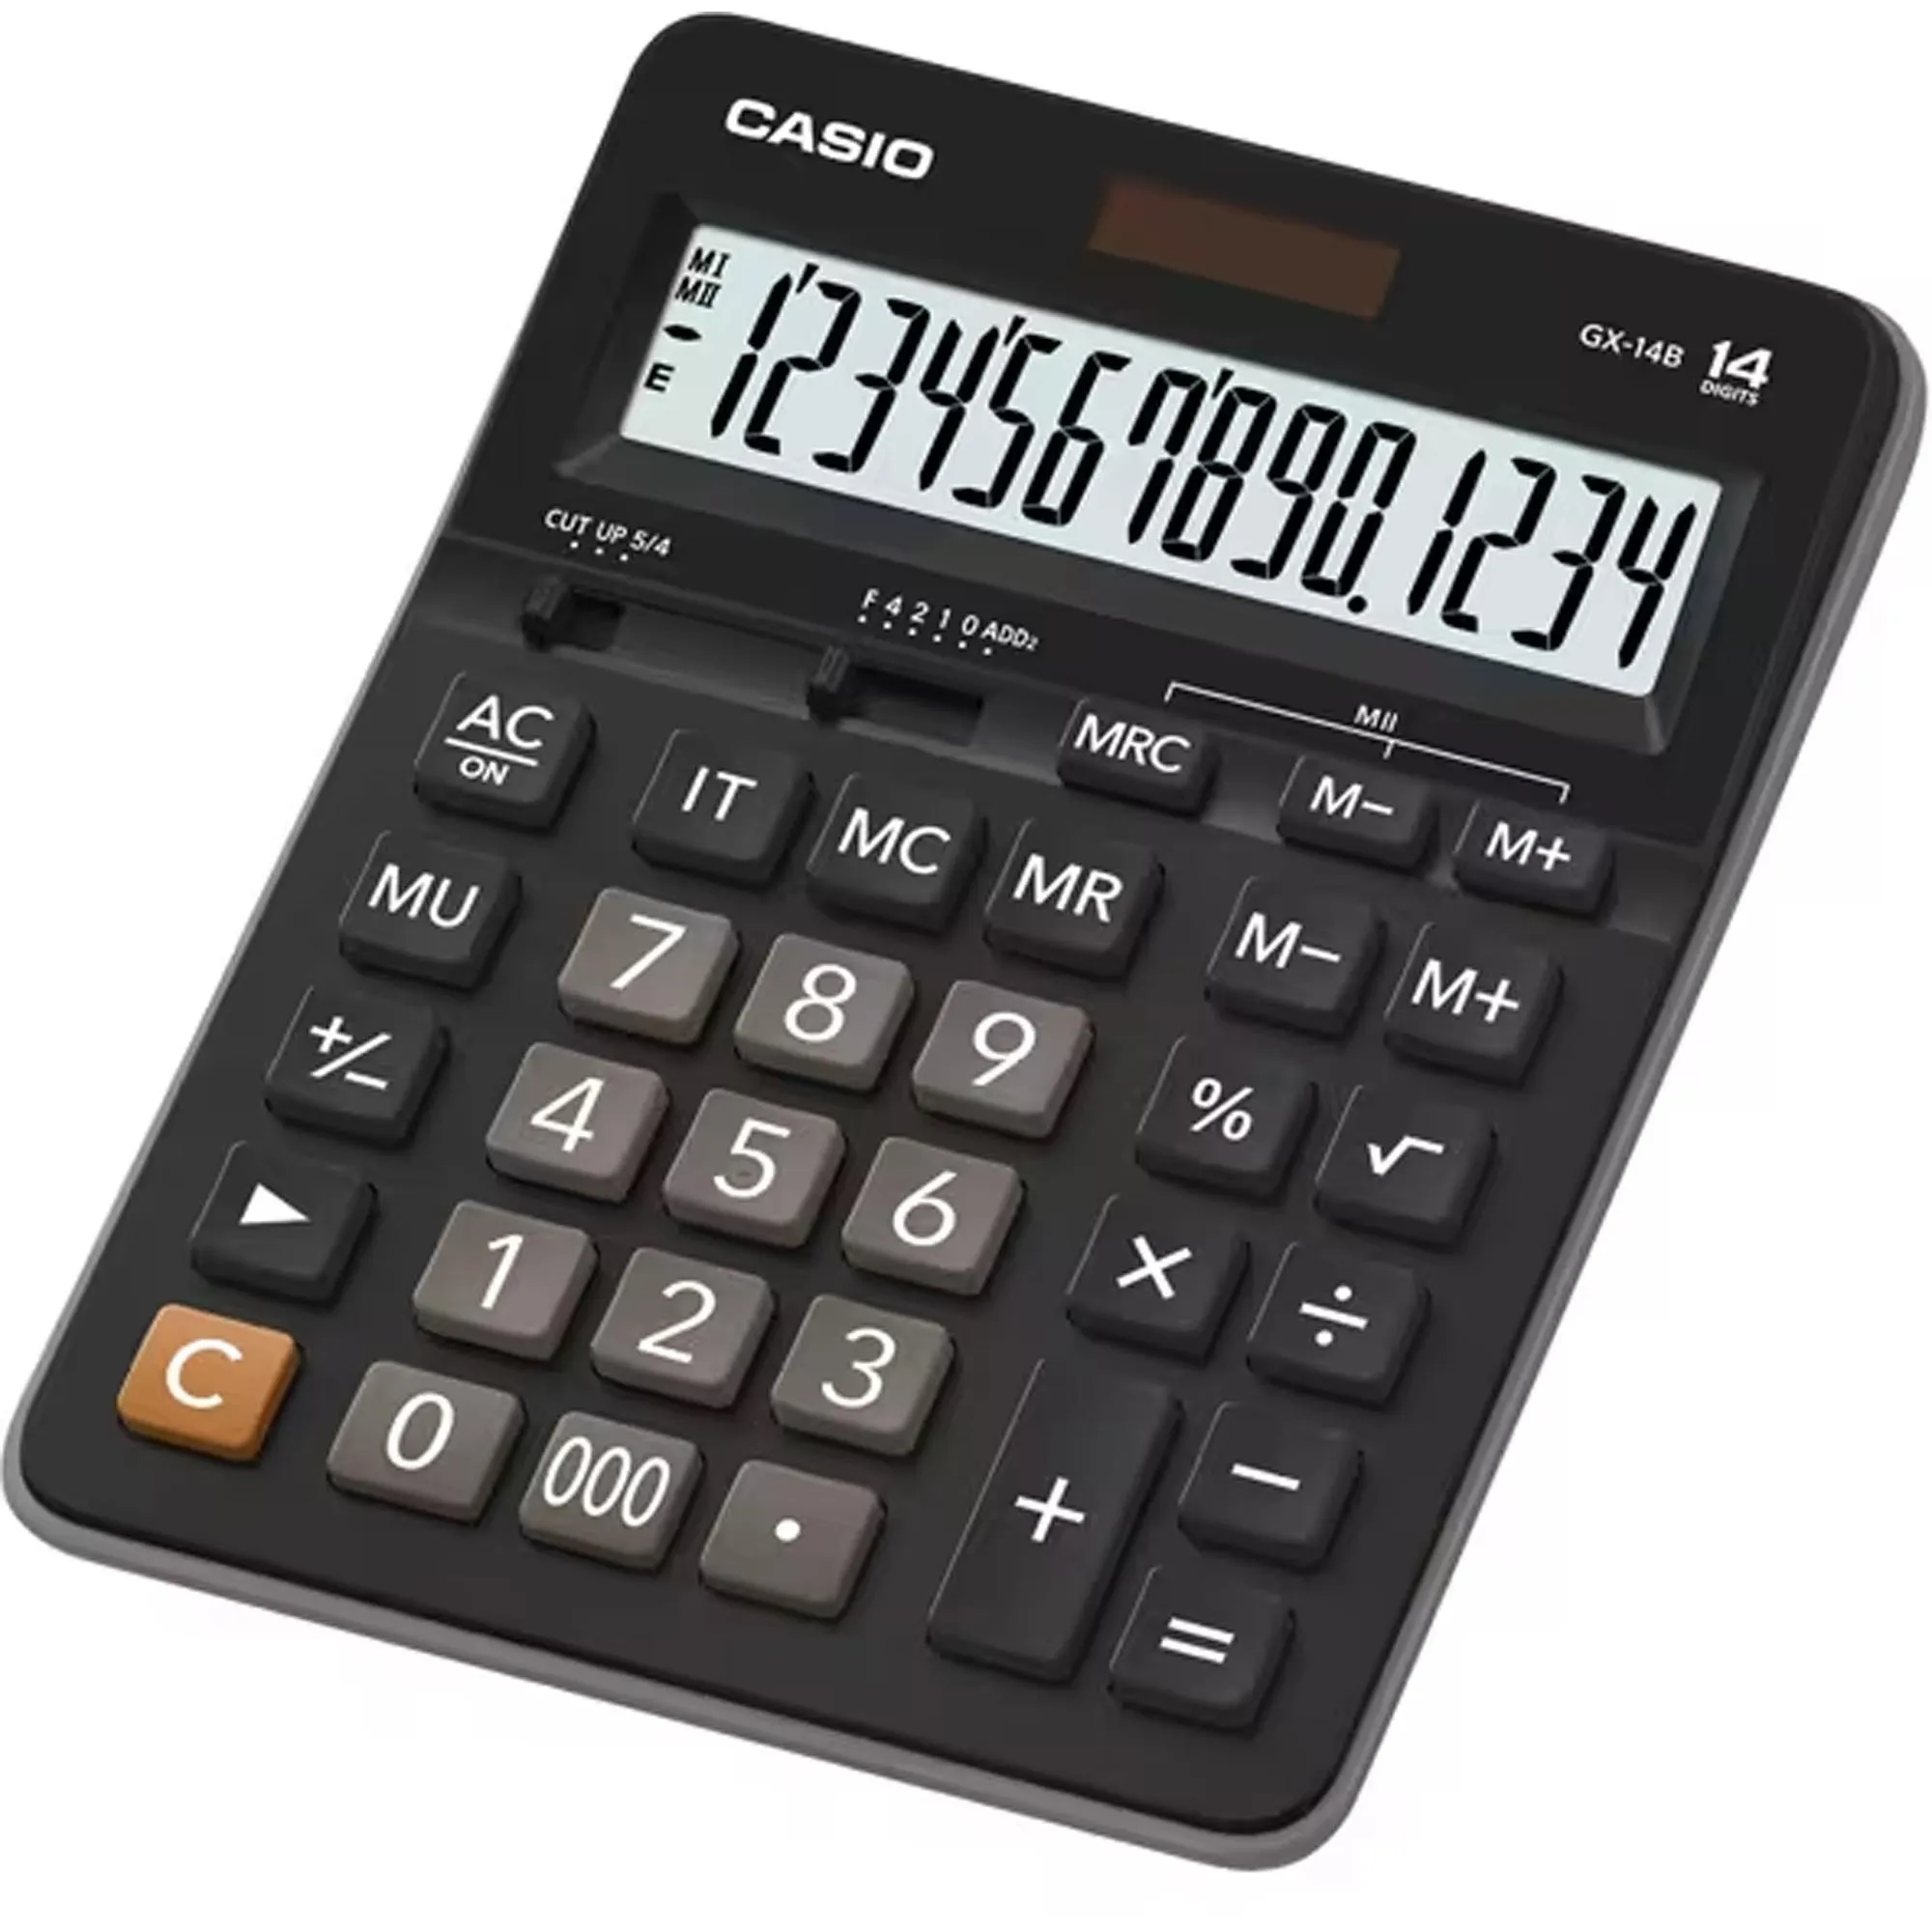 Calculadora De Mesa Casio GX14B 14 Dígitos Preta por 85,99 à vista no boleto/pix ou parcele em até 3x sem juros. Compre na loja Mundomax!